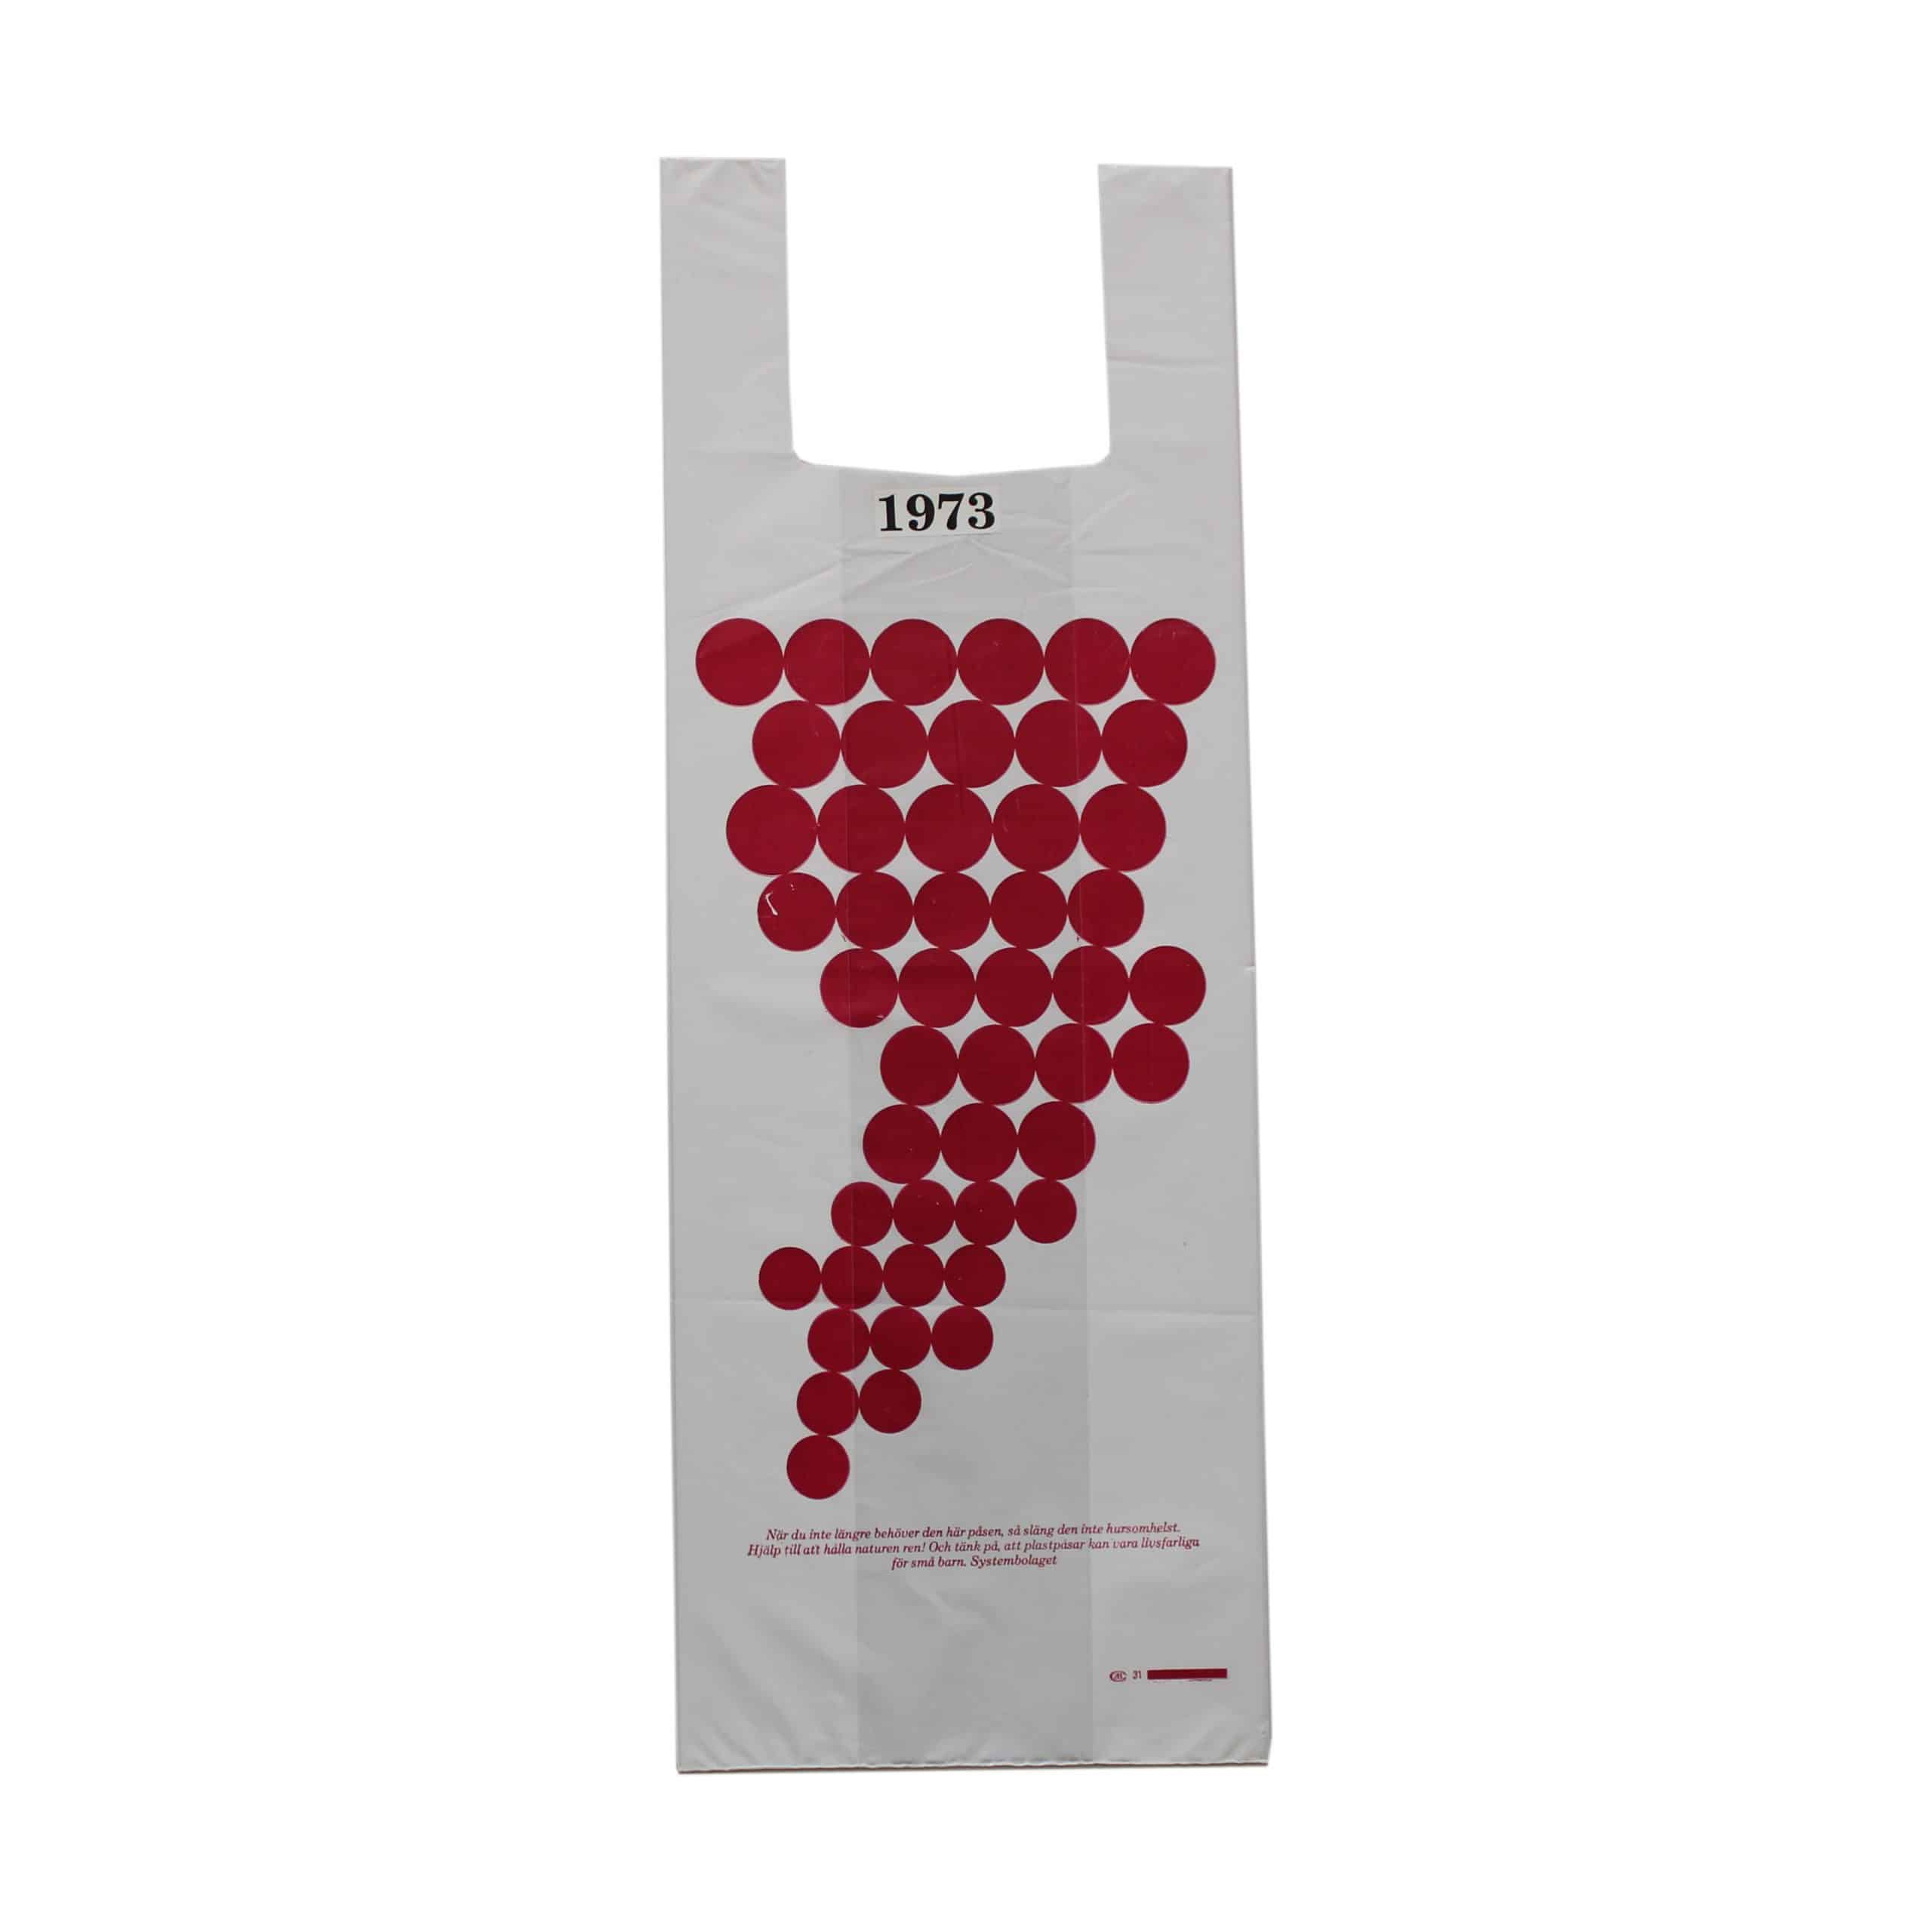 Vit plastpåse med grönt och rött tryckDruvklasar (fokus på vin).Tidpunkt: 1973; Deponent: Systembolaget / Systembolaget AB; Motiv-ID: SYS010018